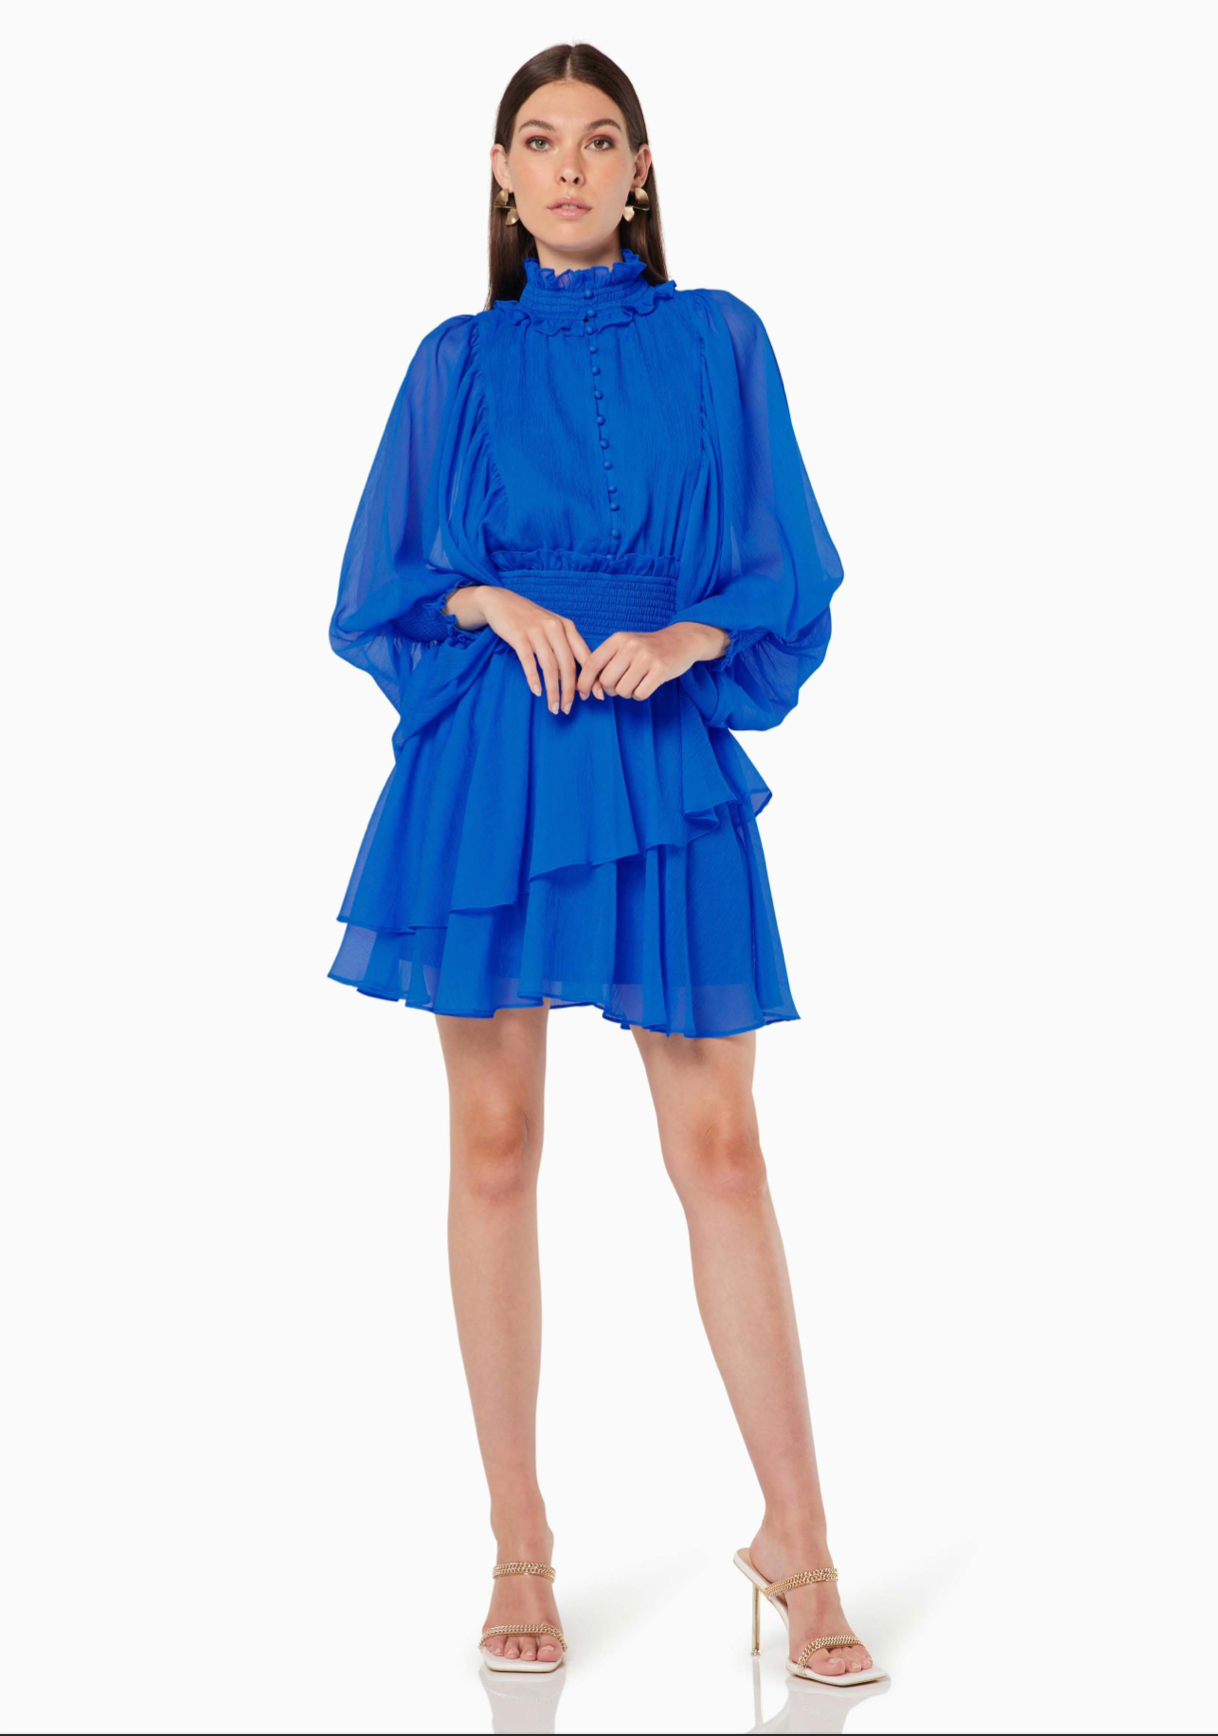 Dora Dress in Blue Sz L/14